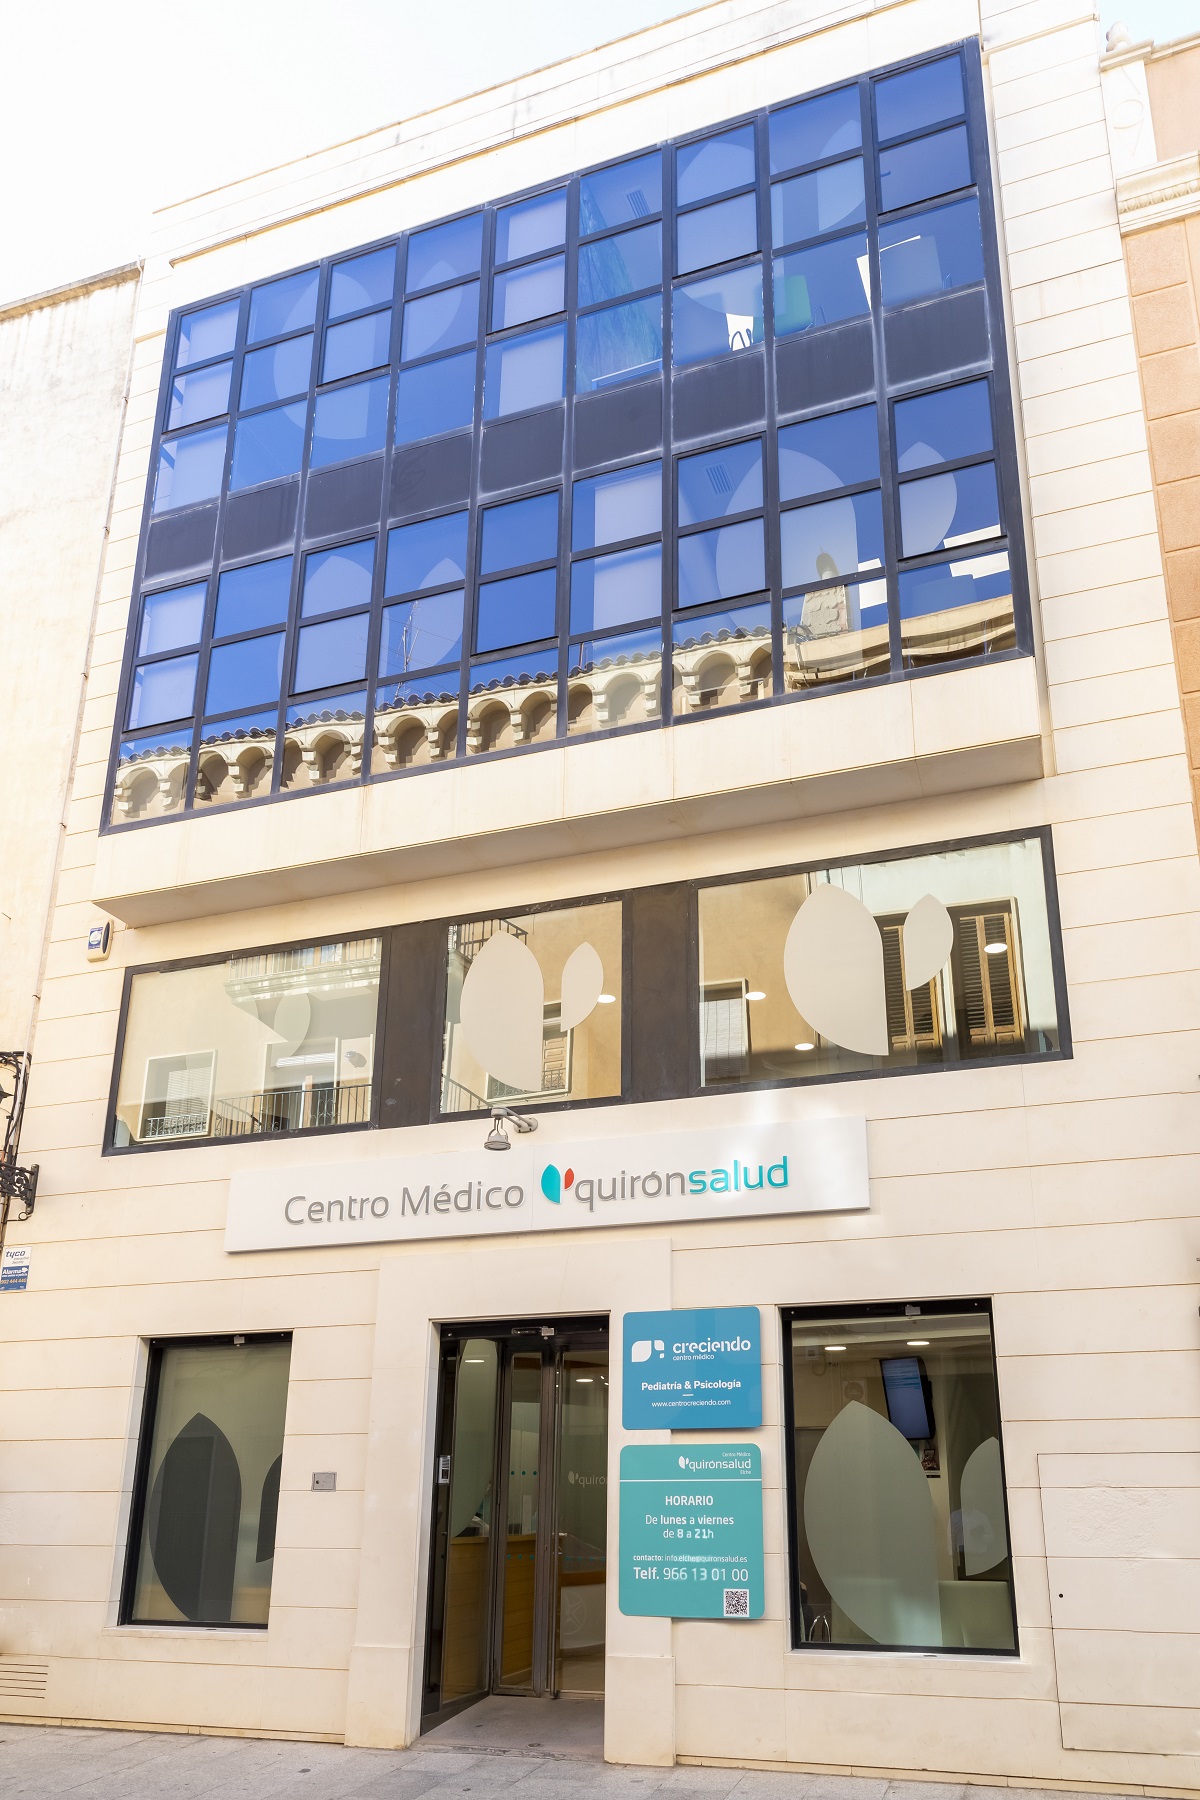 centro medico quironsalud elche fachada (2)